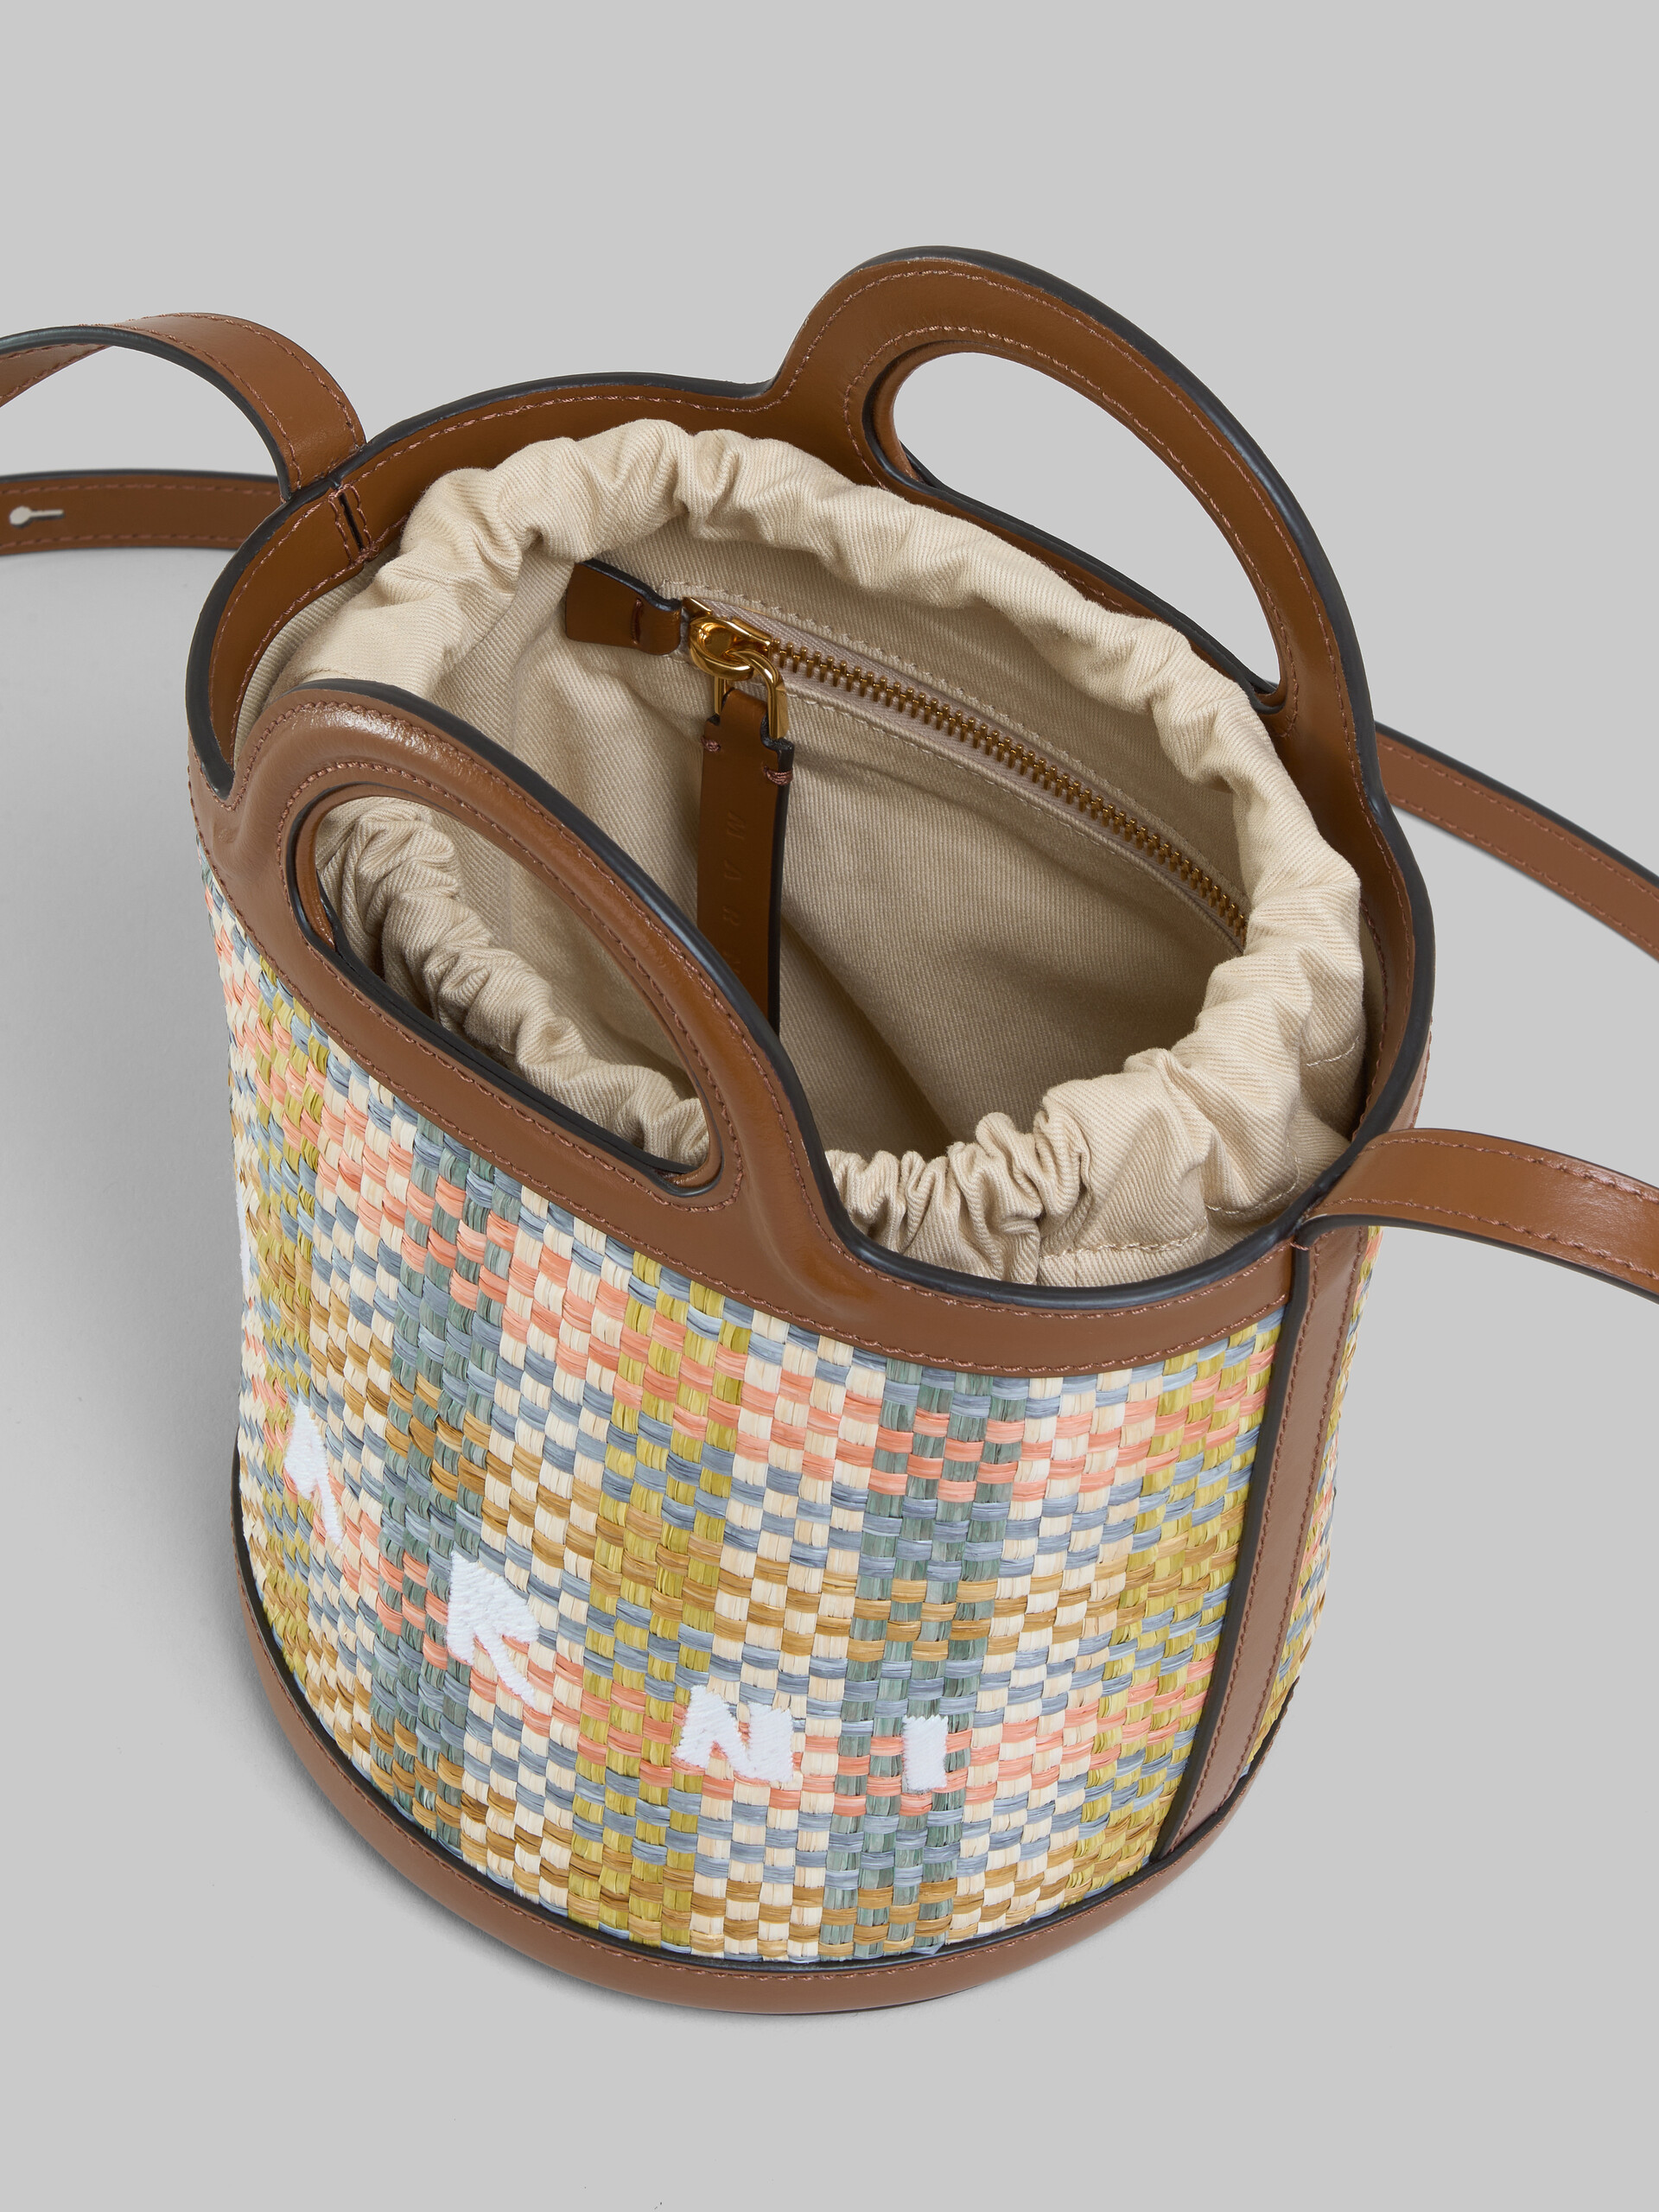 Petit sac seau Tropicalia en tissu effet raphia à carreaux et cuir marron - Sacs portés épaule - Image 4